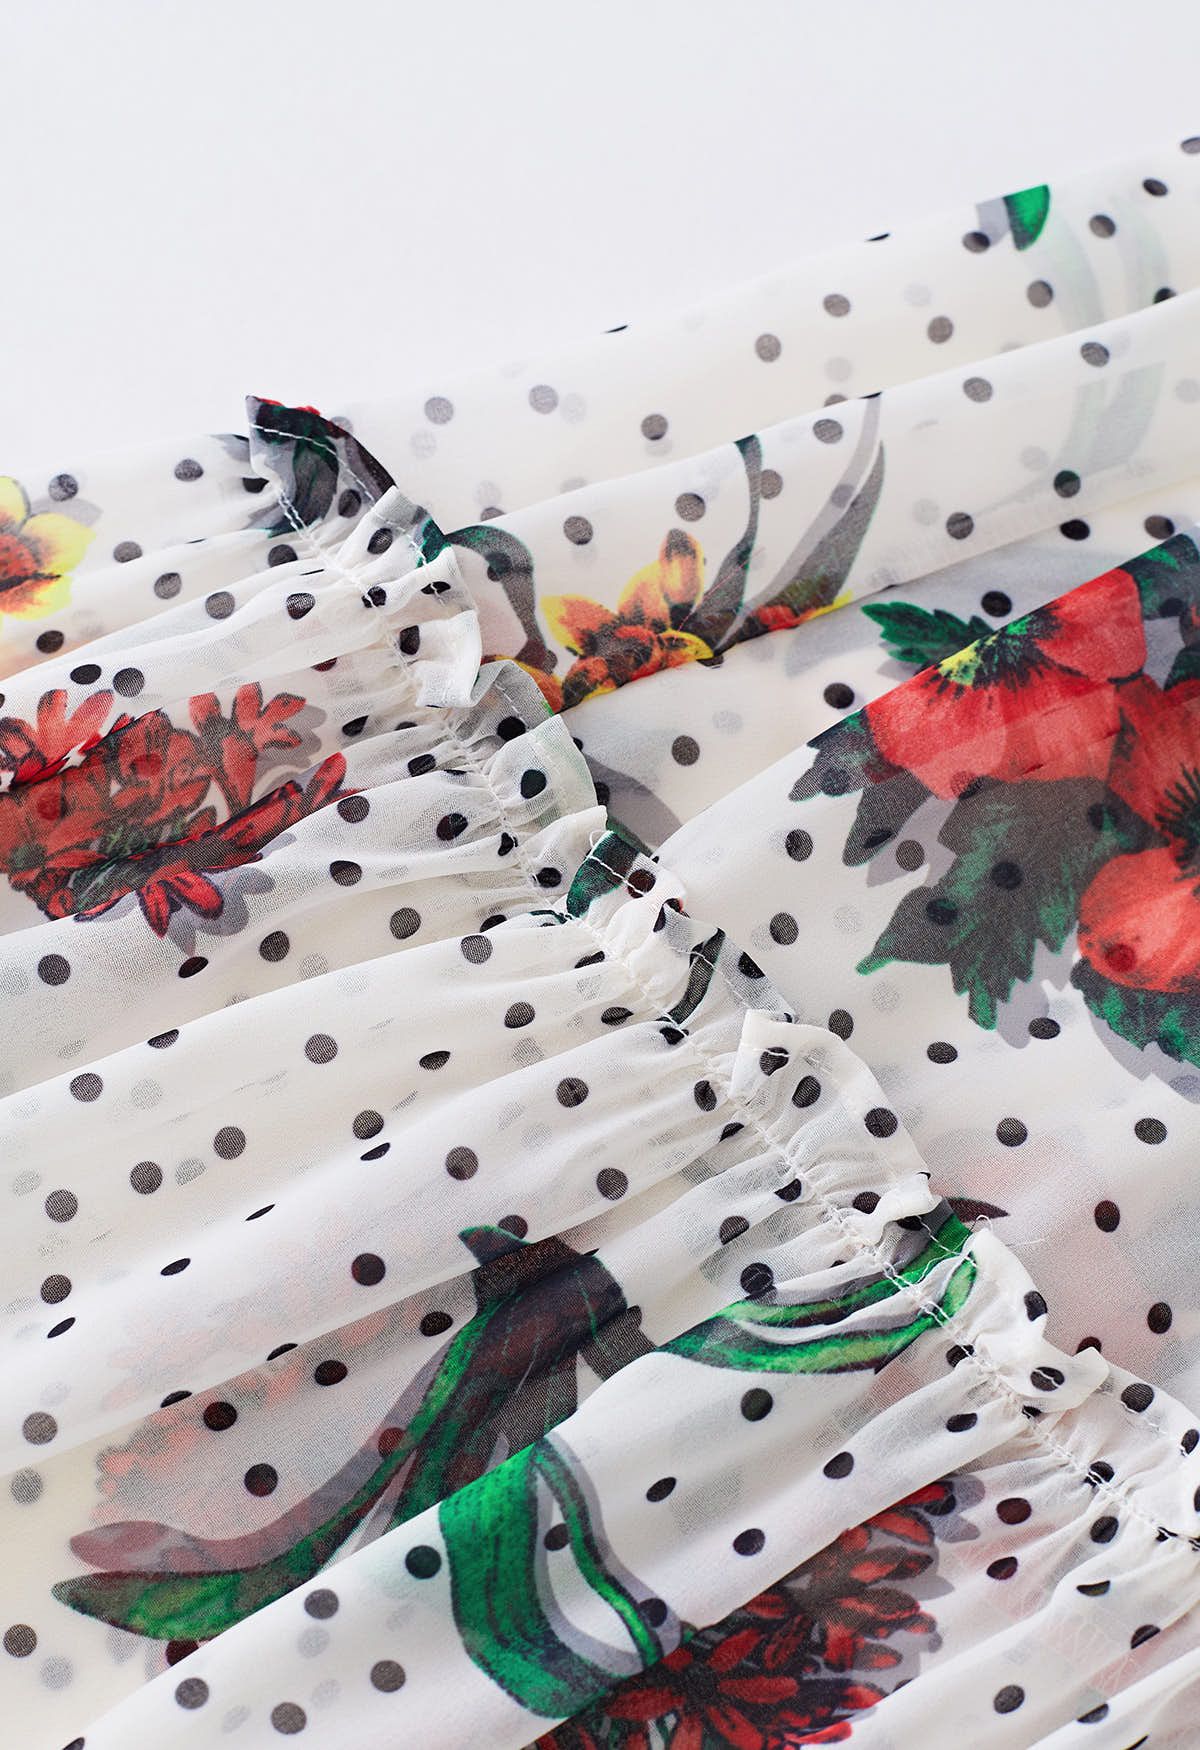 فستان ماكسي شيفون بنقشة زهور منقطة